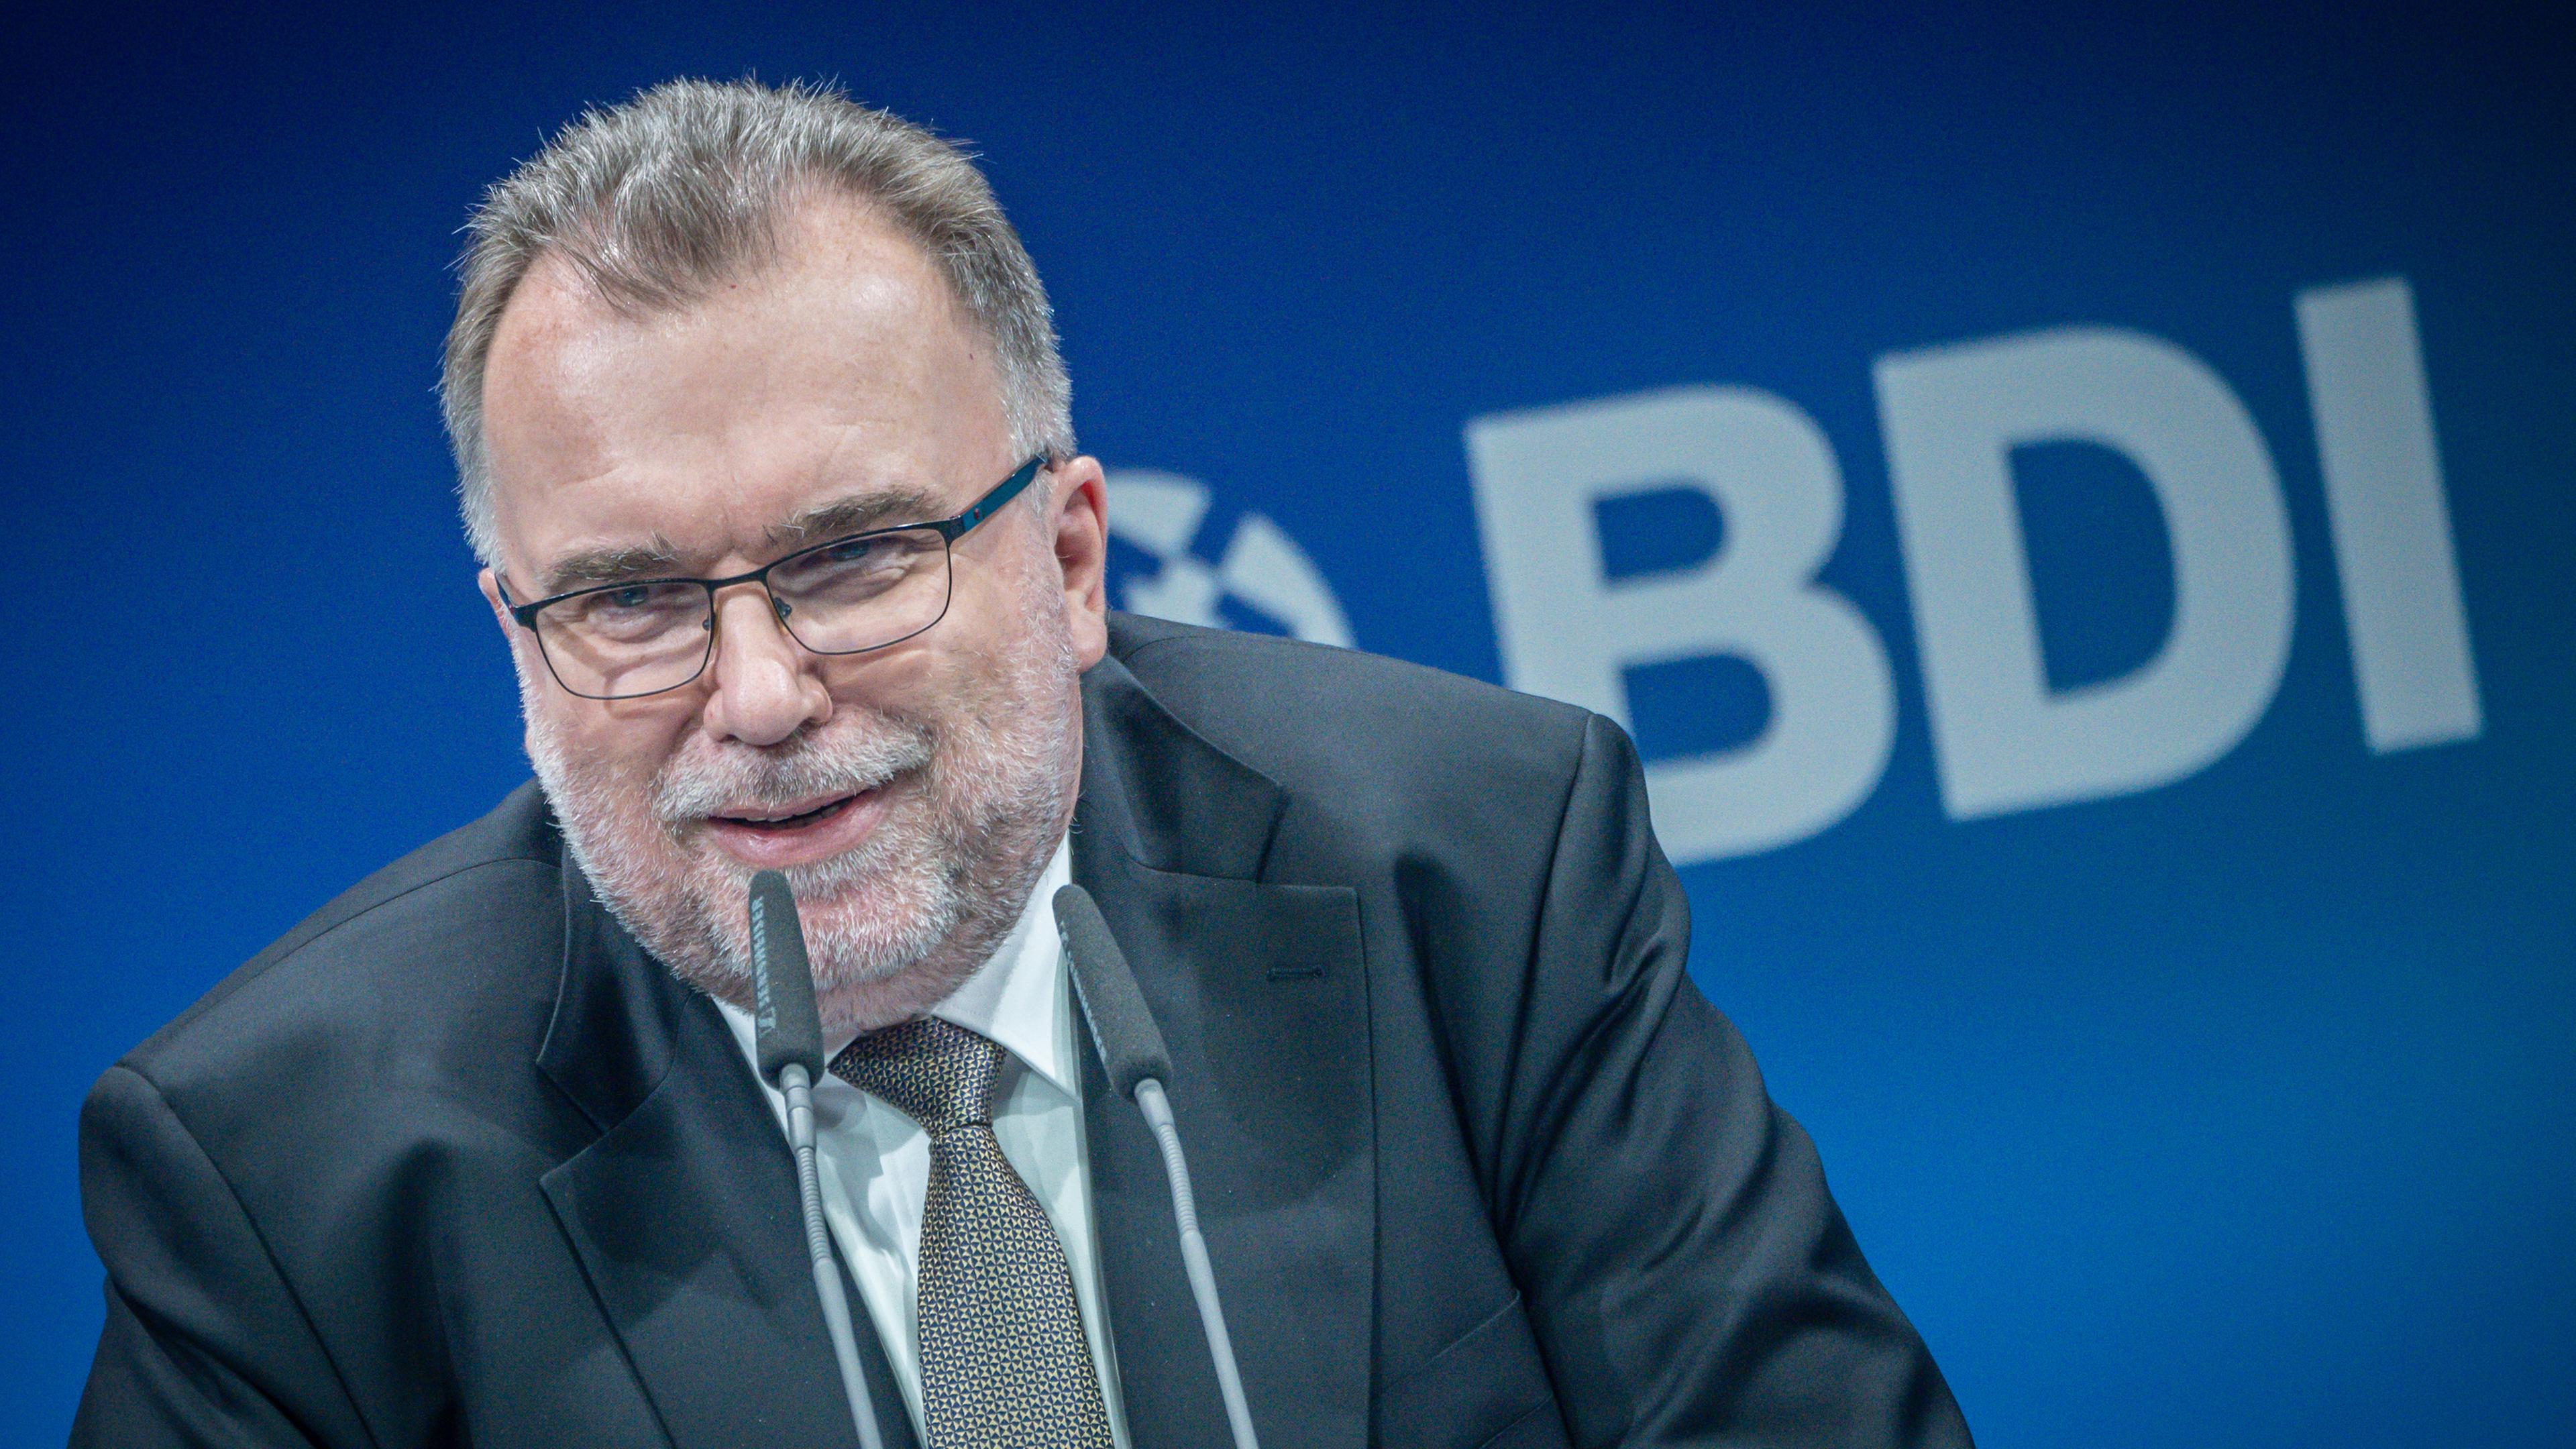 21.06.2022, Berlin: Berlin: Siegfried Russwurm, BDI Präsident, spricht beim «TDI - Tag der Industrie» des Bundesverbandes der Deutschen Industrie (BDI)